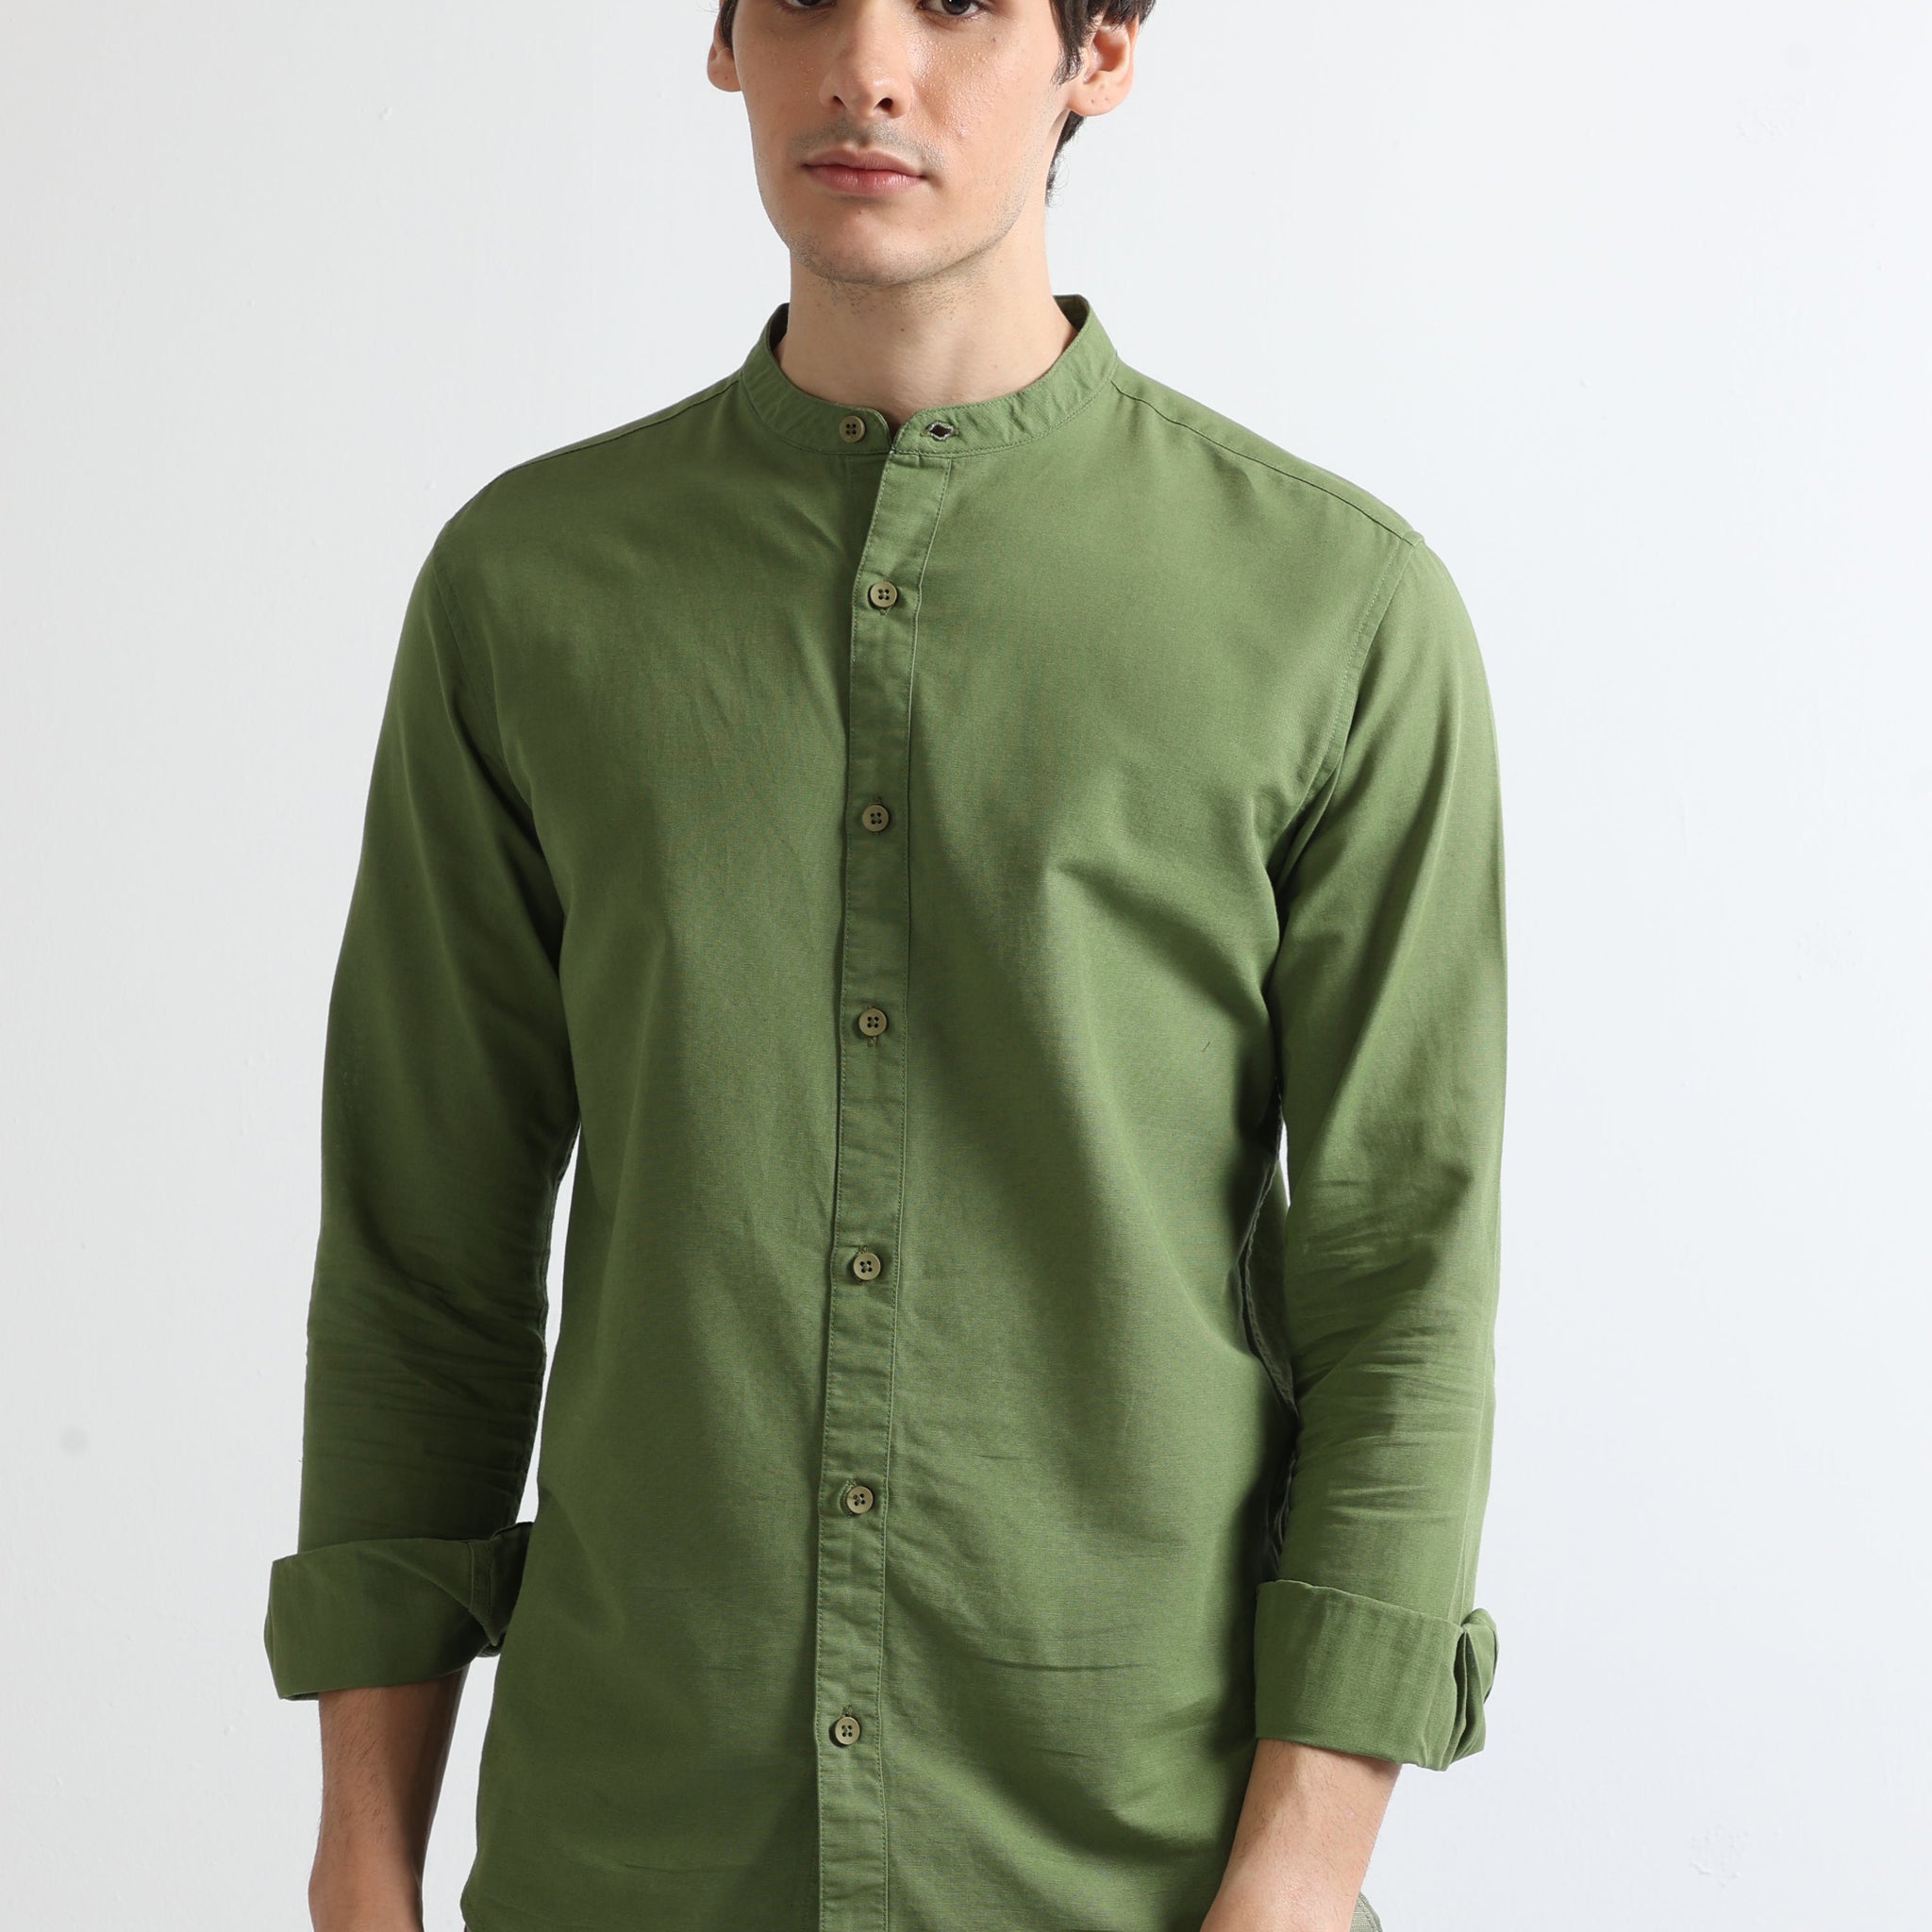 Light Green Men's Chinese Collar Plain Shirt